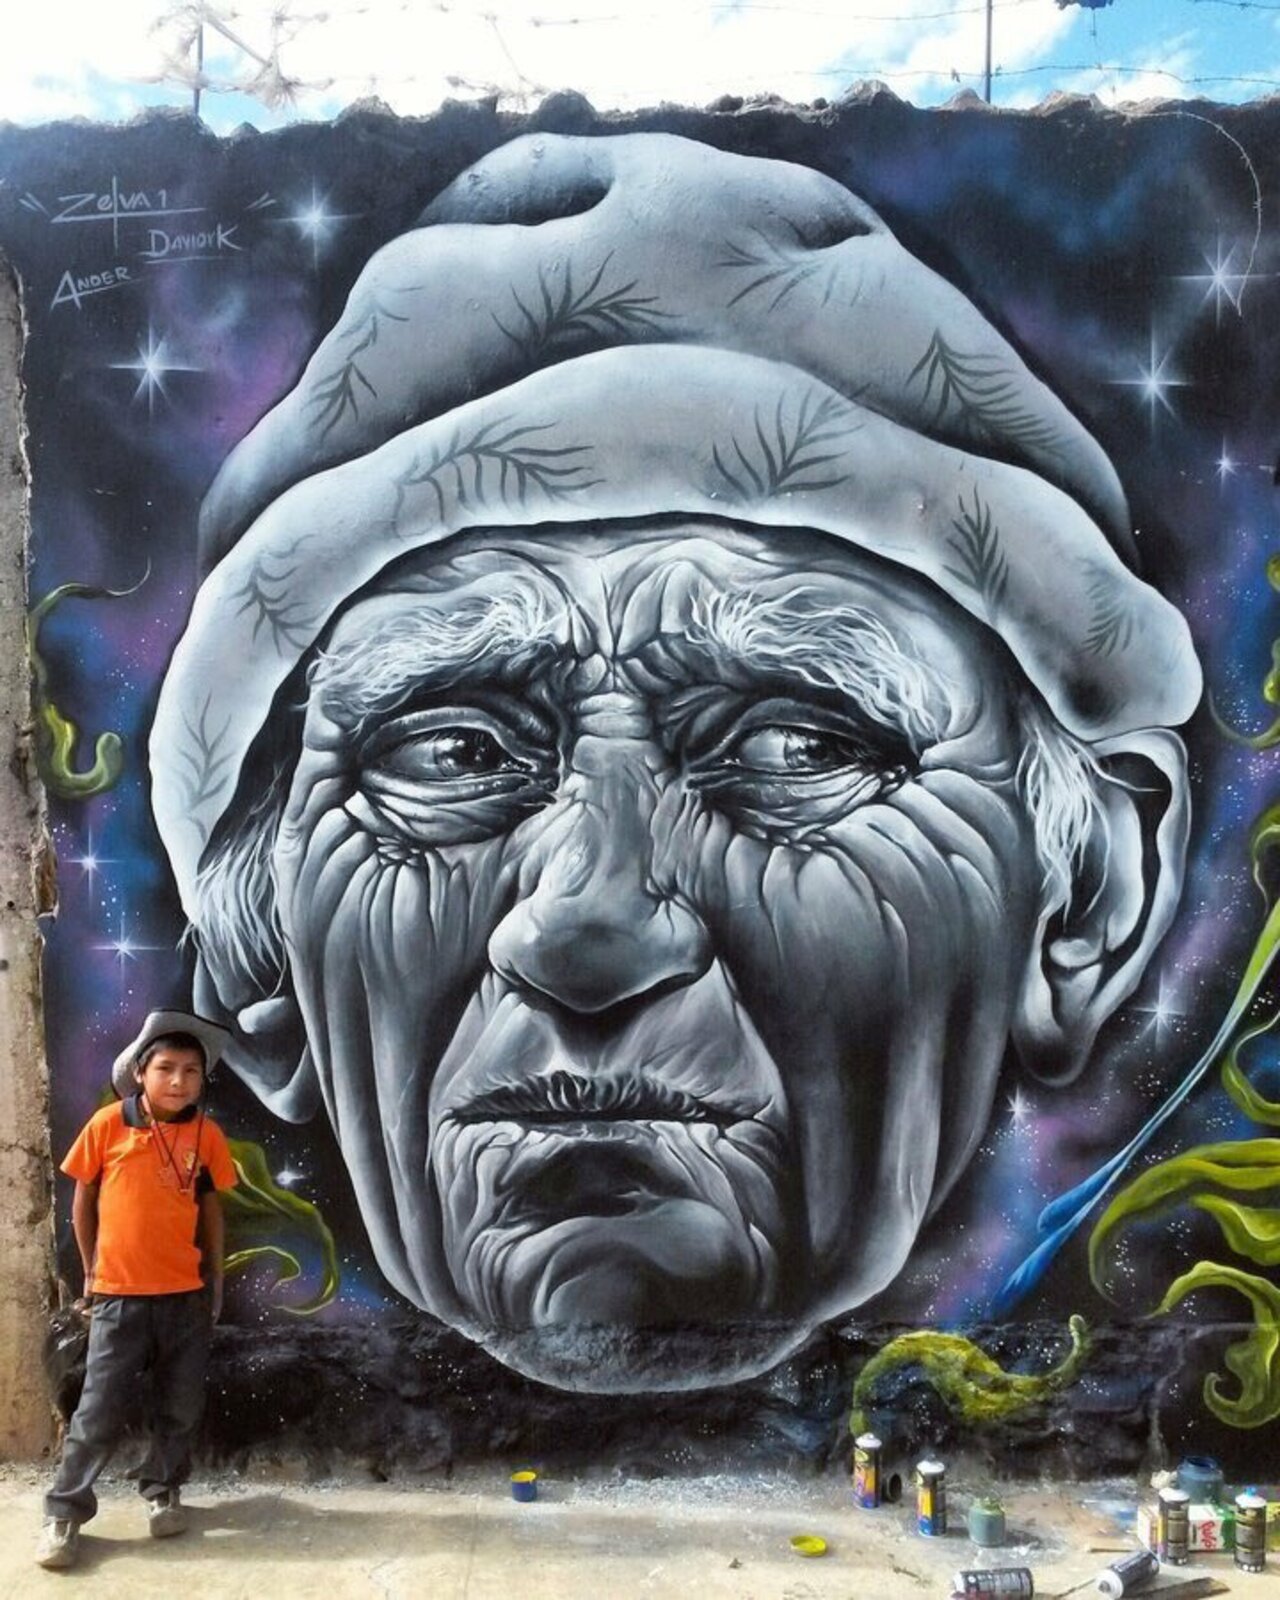 Mural by Zelva1 #Lima #Peru #streetart #mural #art #urbanart #graffiti https://t.co/wLiYDEMl0E